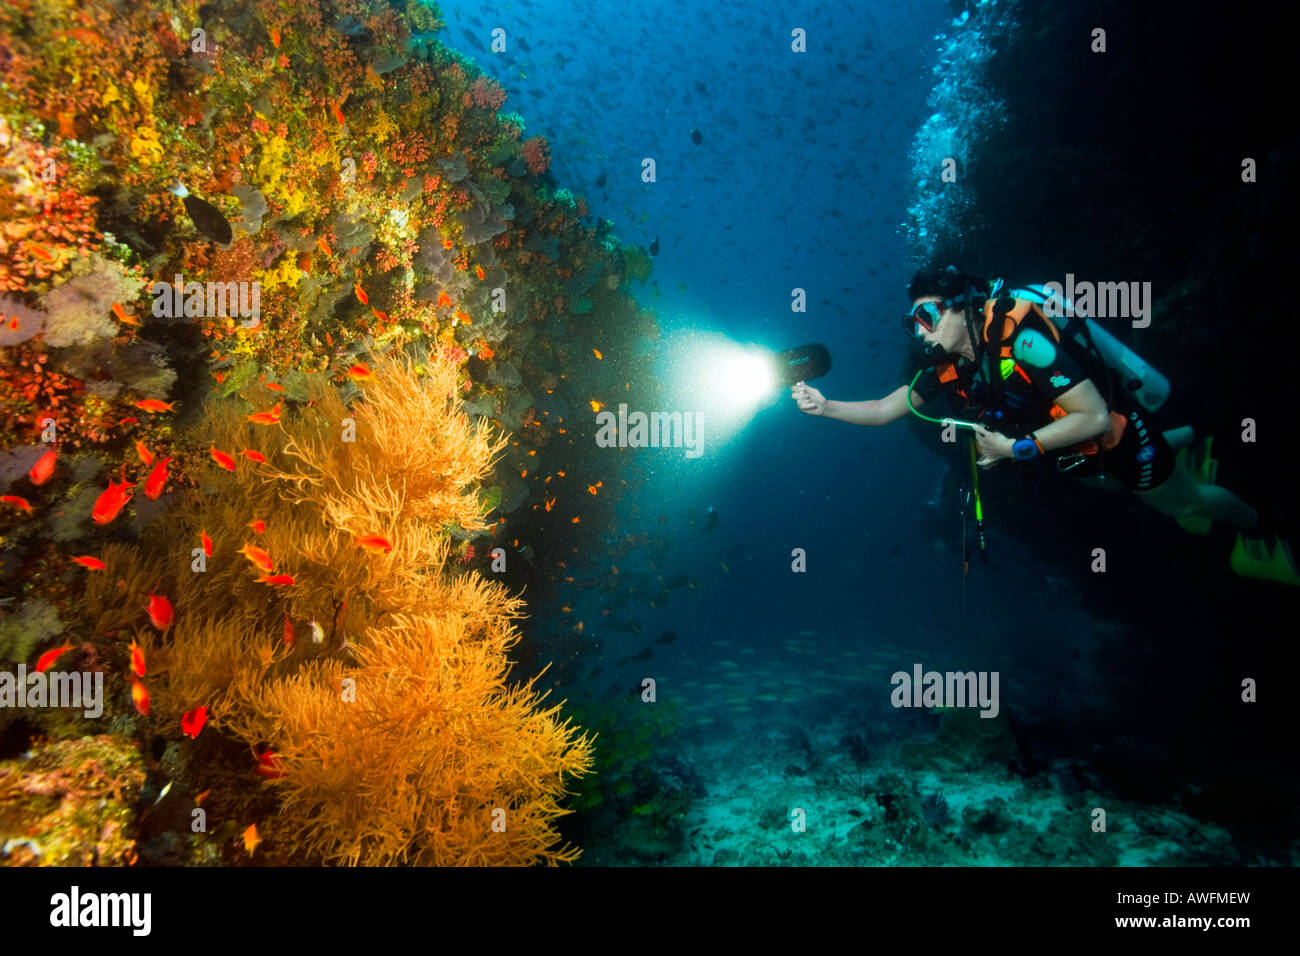 Eine Taucher nutzt den Kamerablitz, um einige schwarze Baum Korallen am Kuda Rah Thila, Ari-Atoll in den Malediven zu beleuchten. Stockfoto